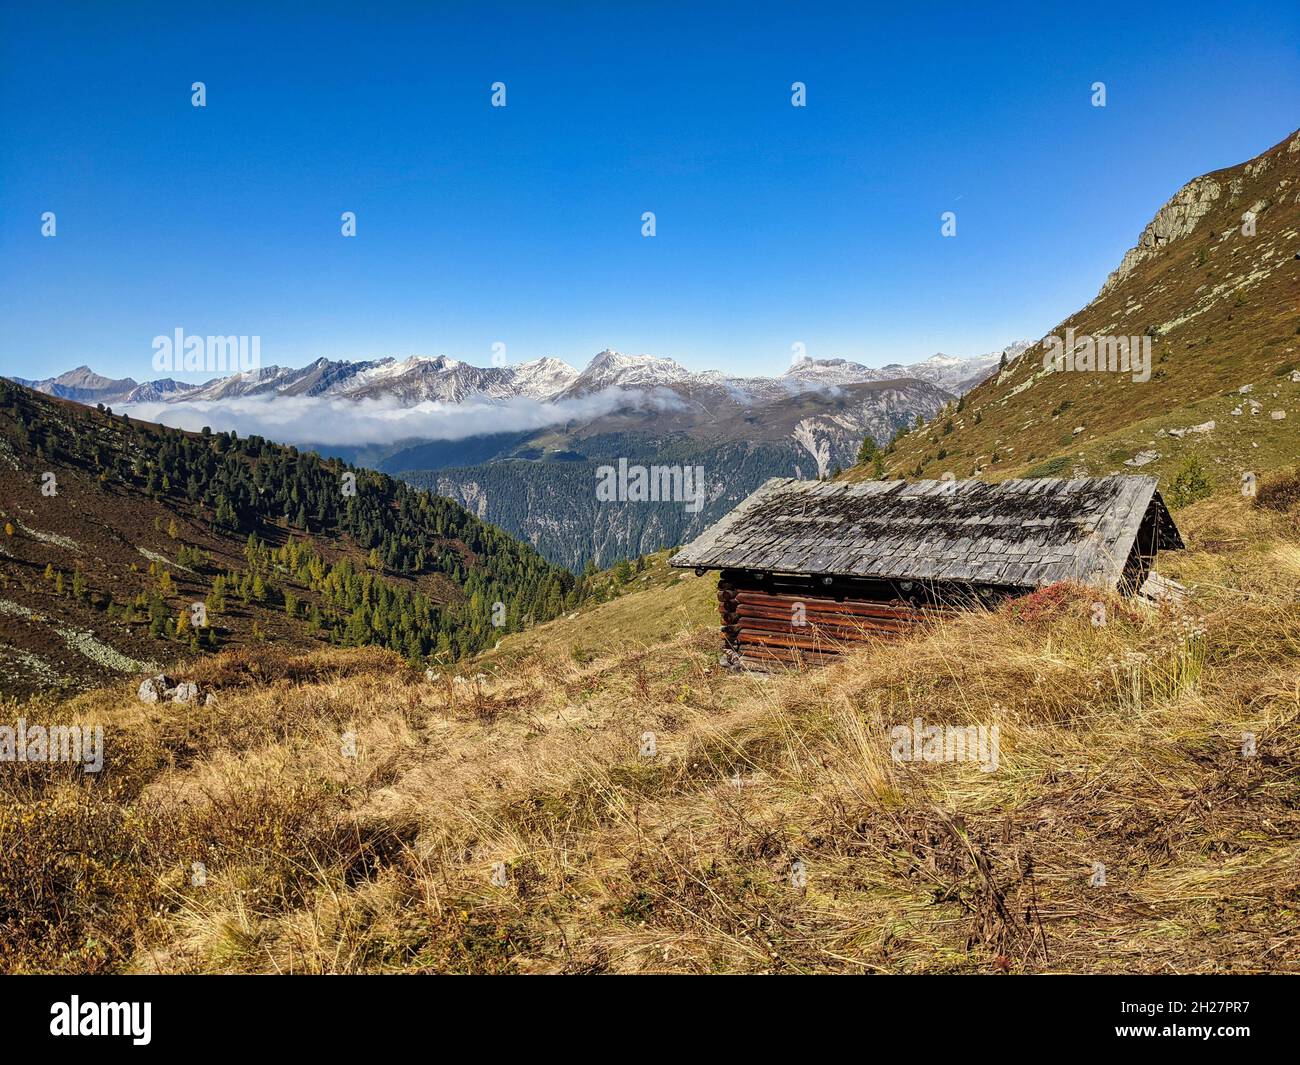 Alter Bauernkopf auf der Alp-Wiese oberhalb von monstein davos. Wunderschöne Wanderlandschaft in der schweiz. Herbstzeit Stockfoto